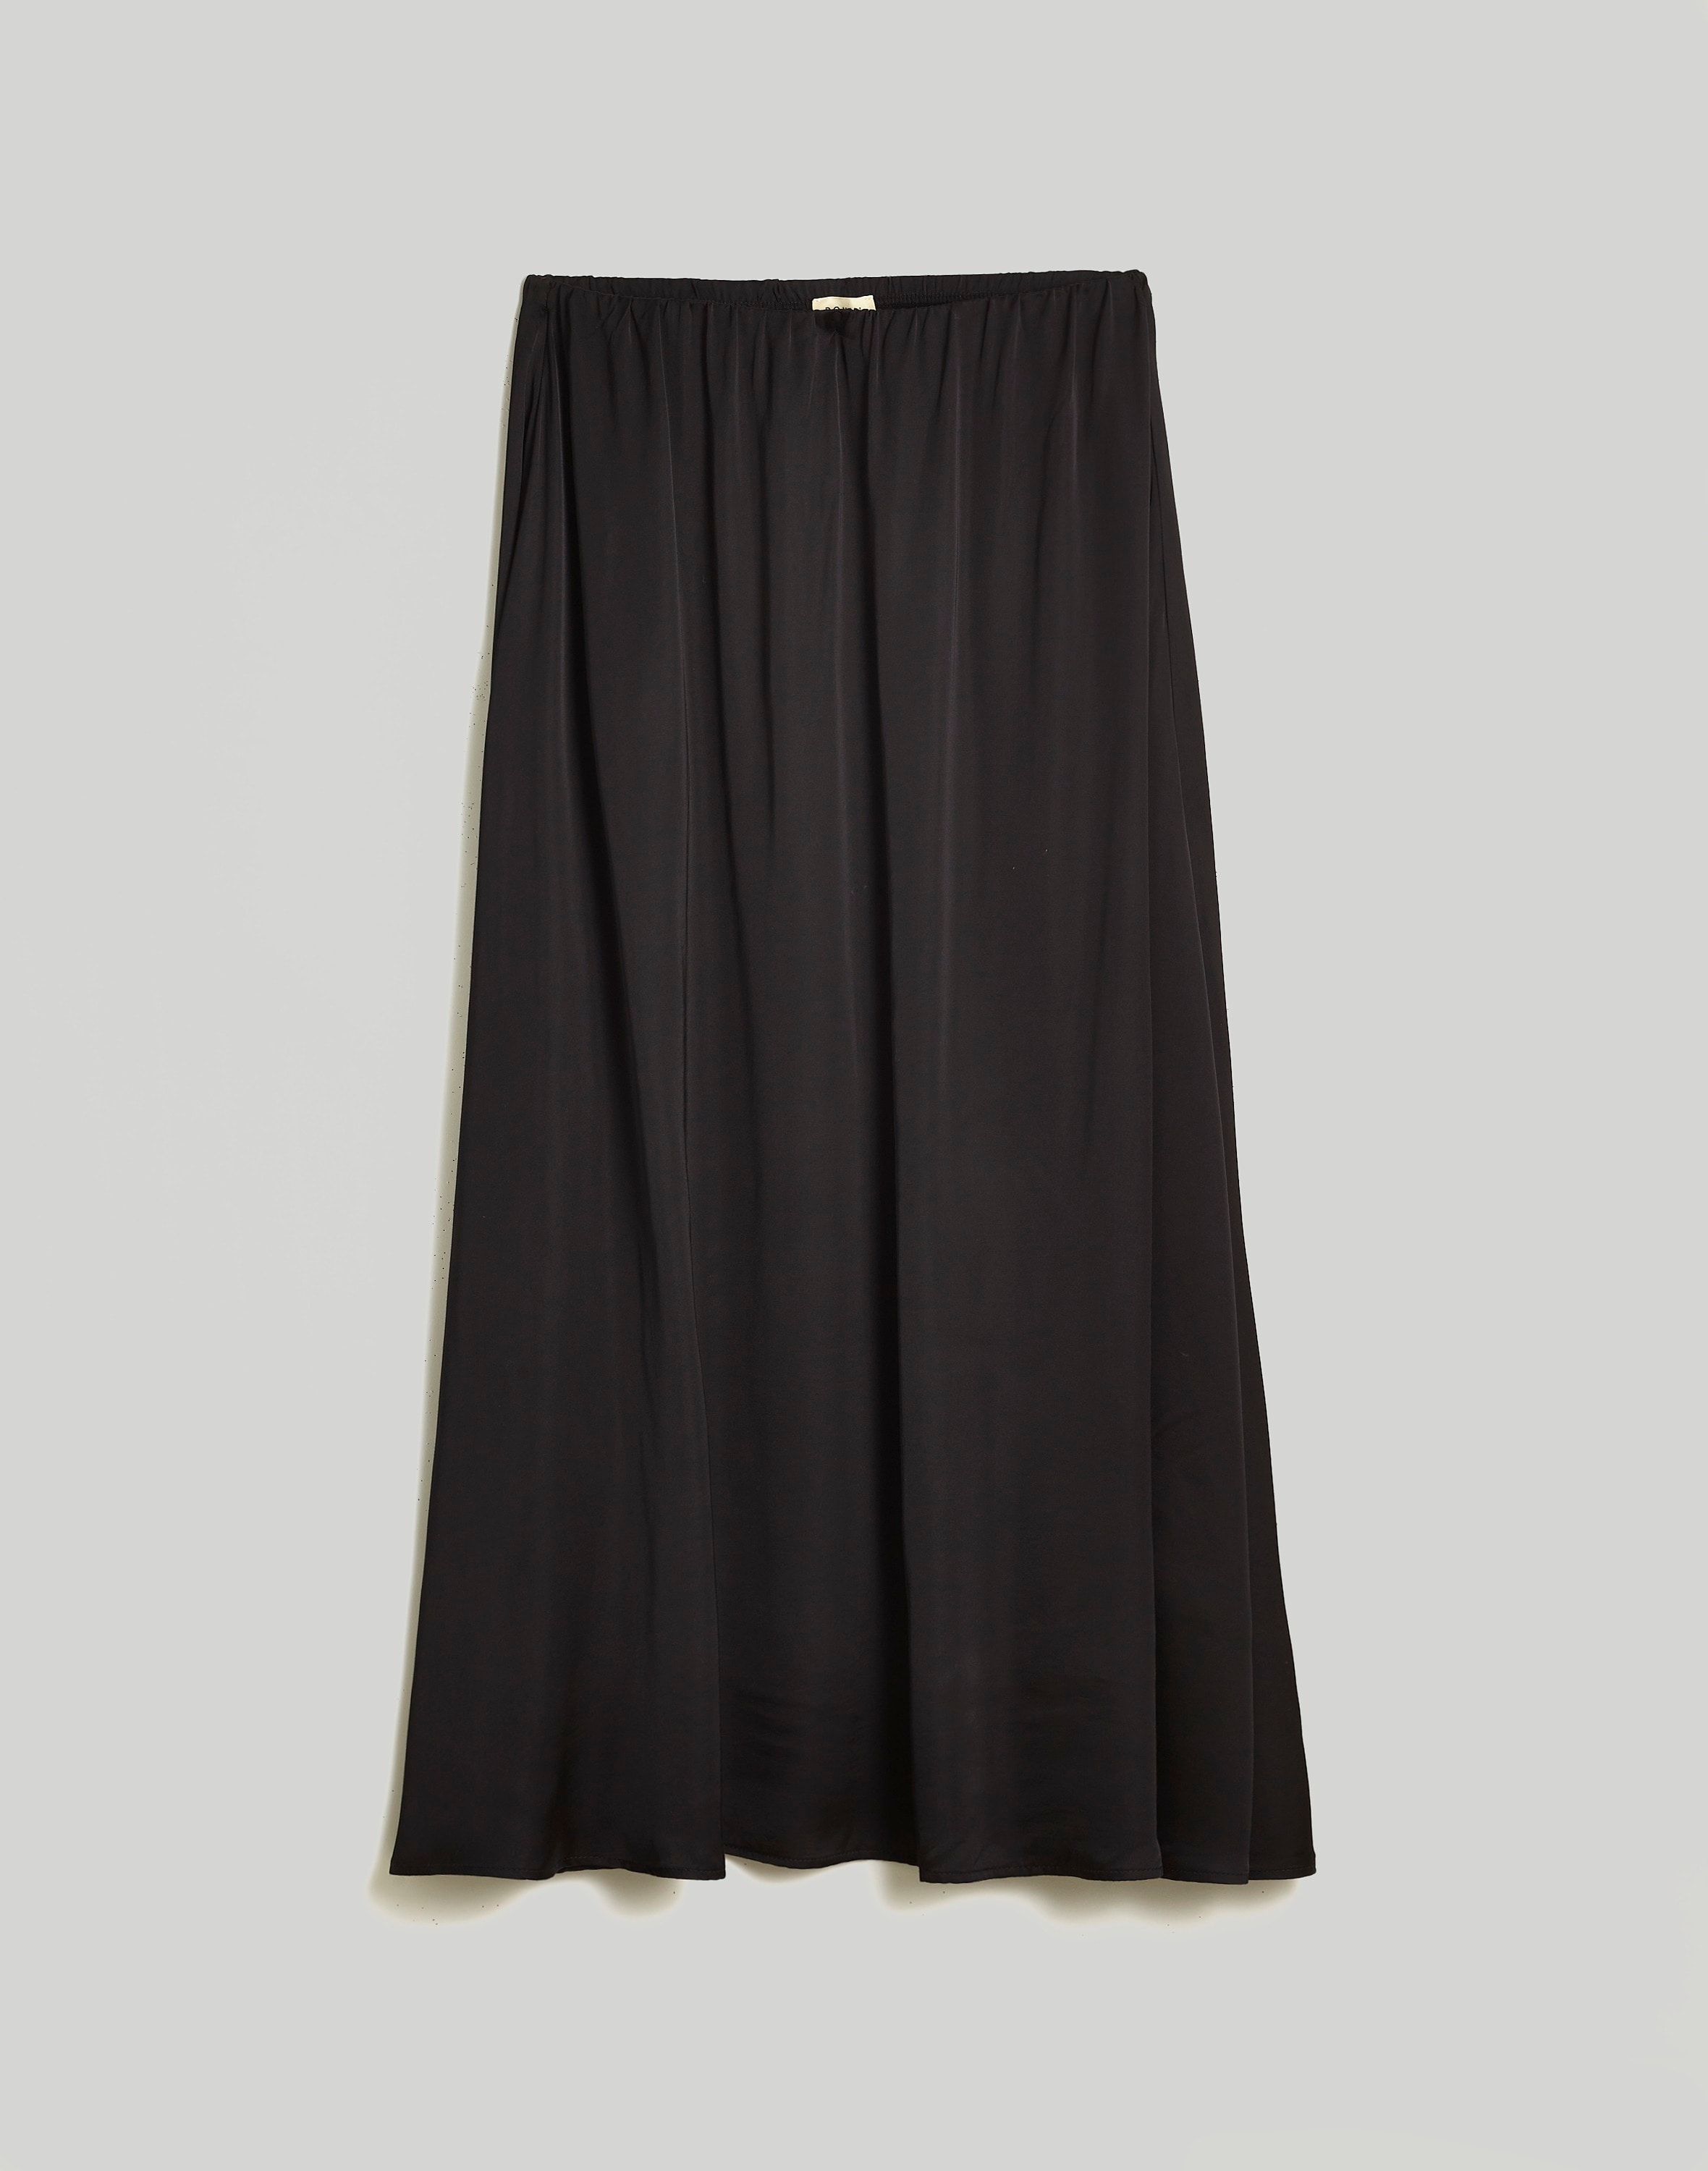 Donni Silky Simple Maxi Skirt